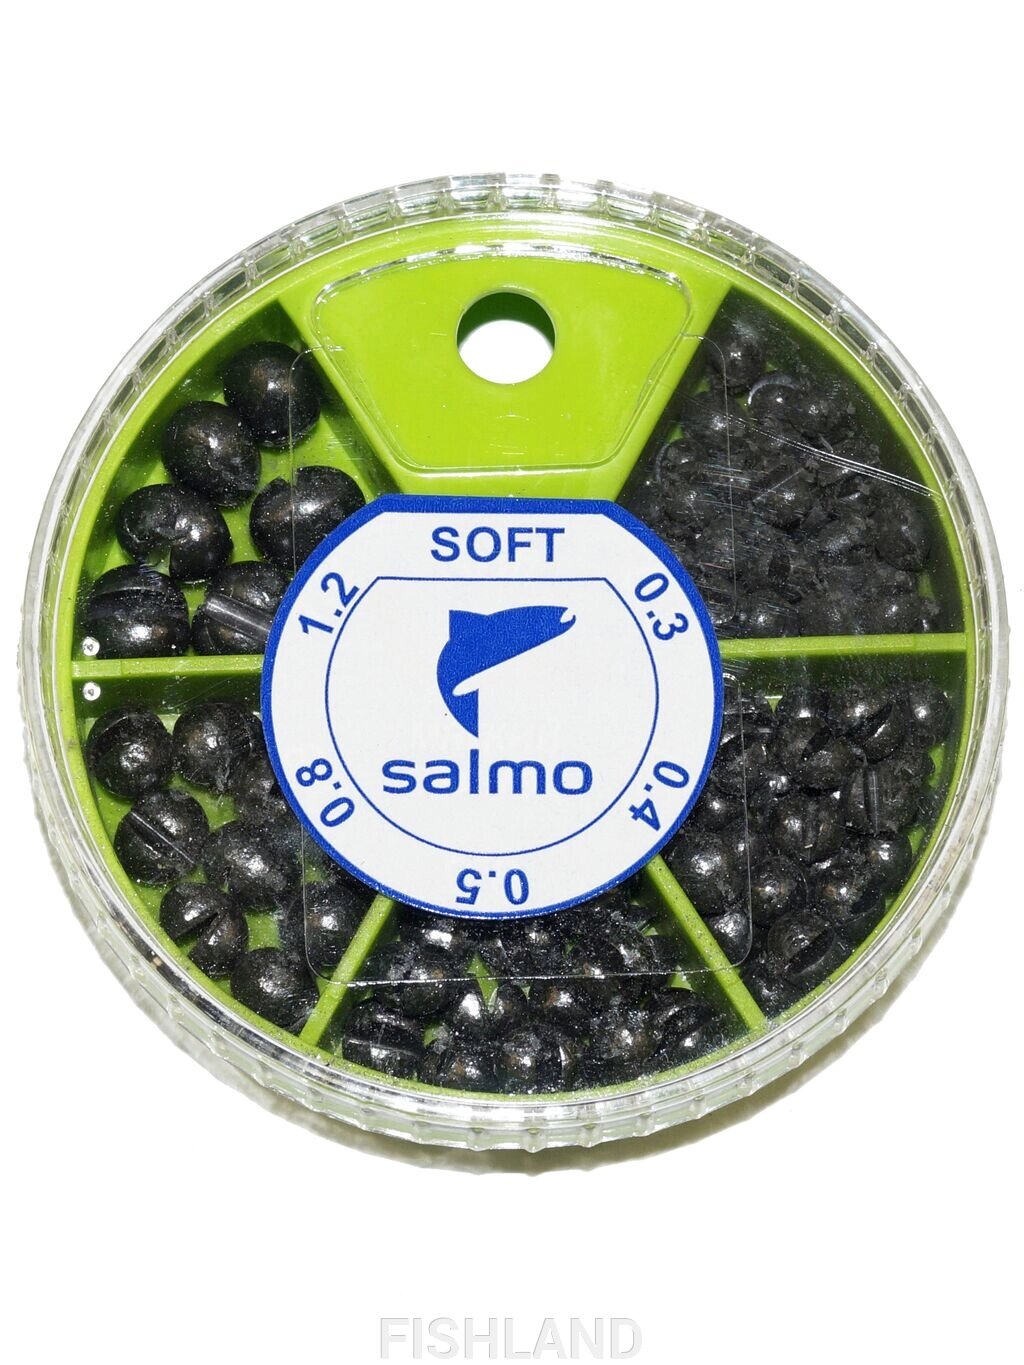 Грузила Salmo ДРОБЬ SOFT мягкий 5 секц. 0.3-1.2г 60г набор от компании FISHLAND - фото 1